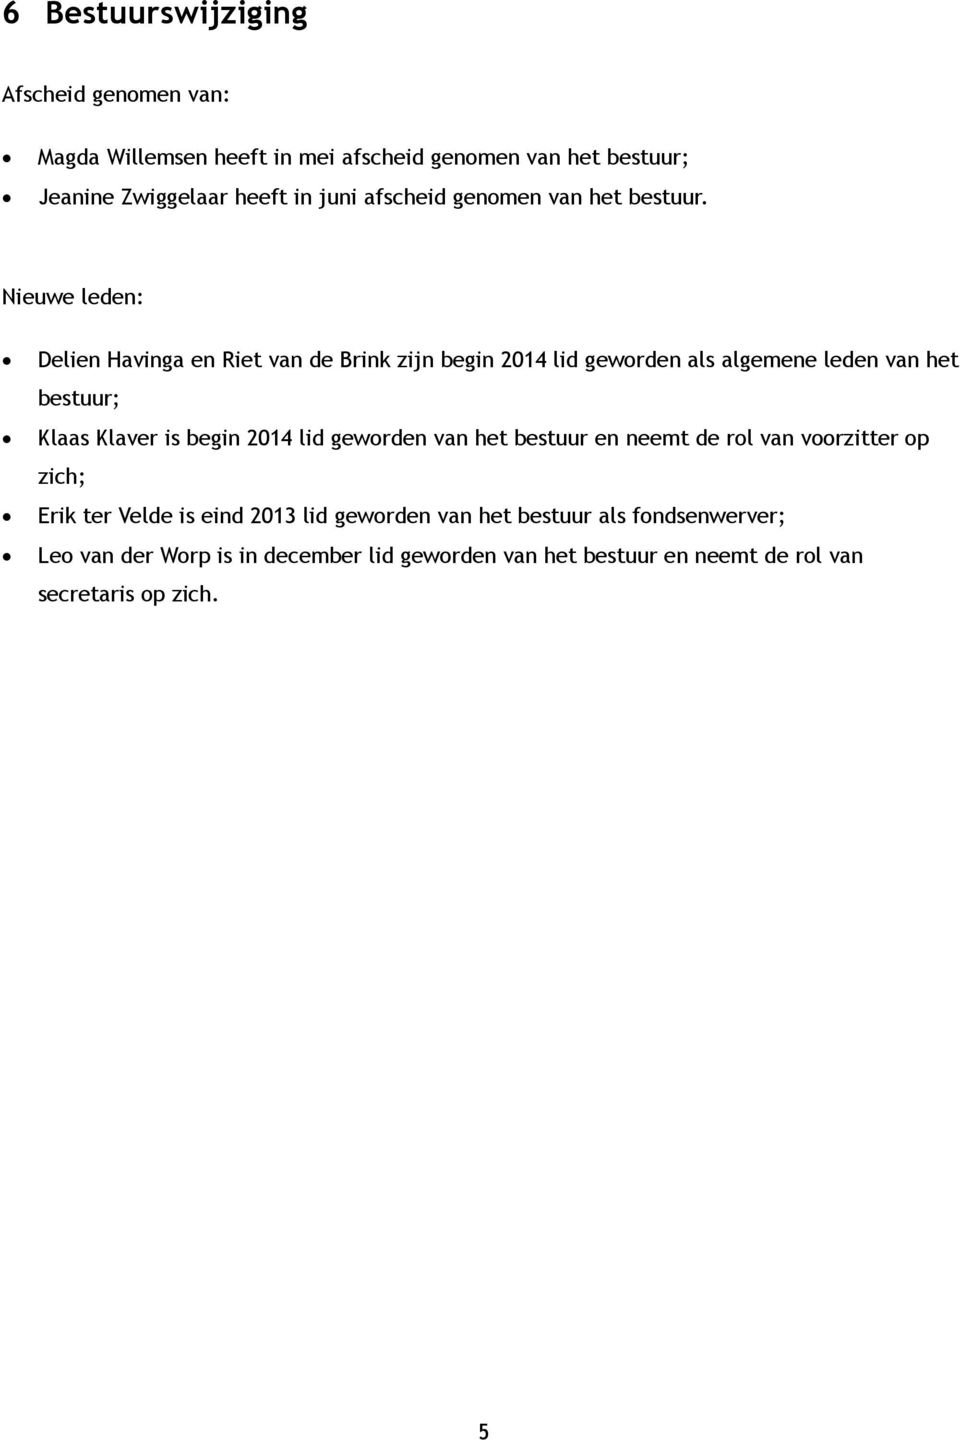 Nieuwe leden: Delien Havinga en Riet van de Brink zijn begin 2014 lid geworden als algemene leden van het bestuur; Klaas Klaver is begin